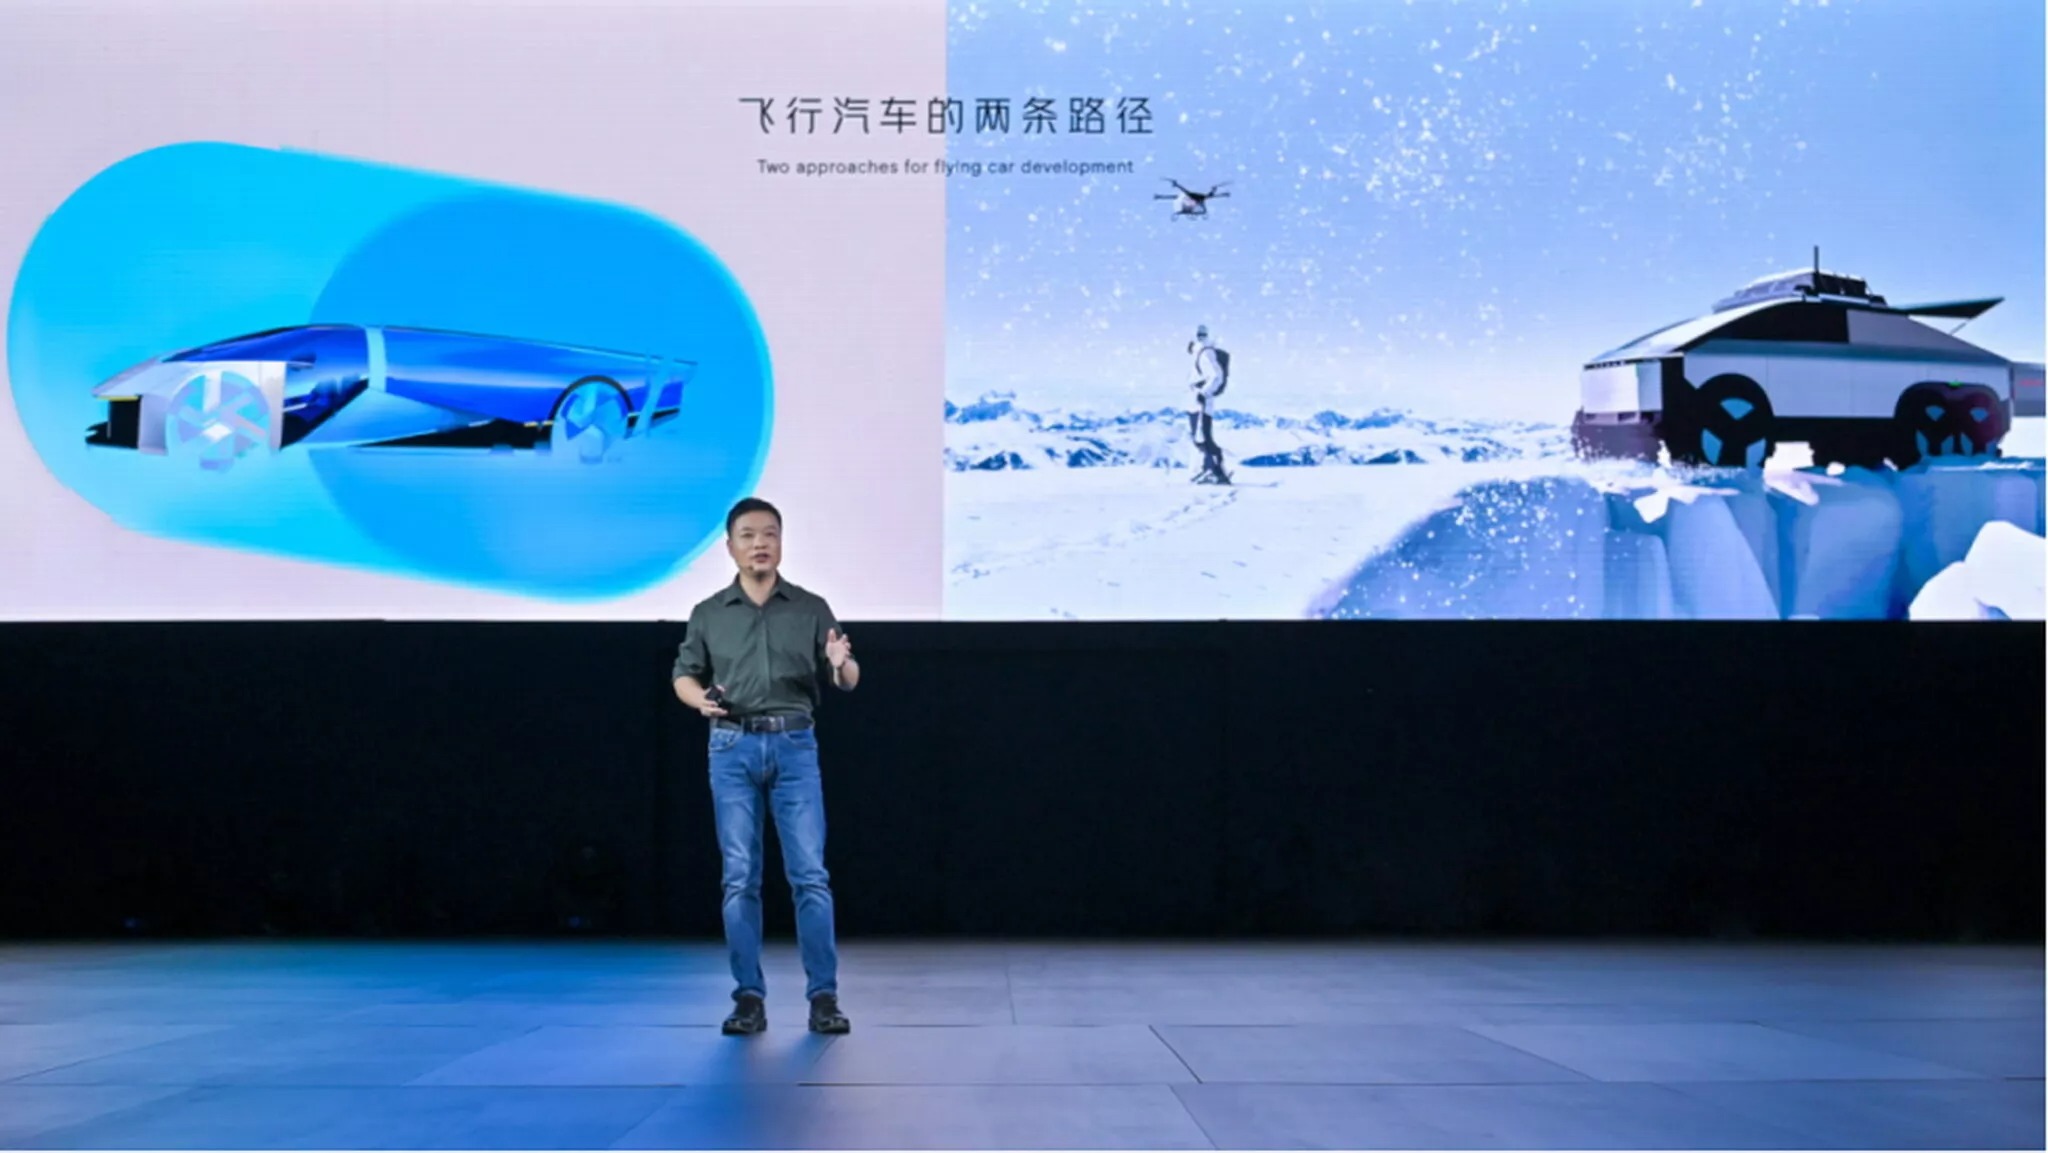 اكس بنج الصينية تدشن مركبات مبتكرة، تشمل كوبيه قادرة على الطيران، وميني فان تعمل كحاملة للطائرات! 2